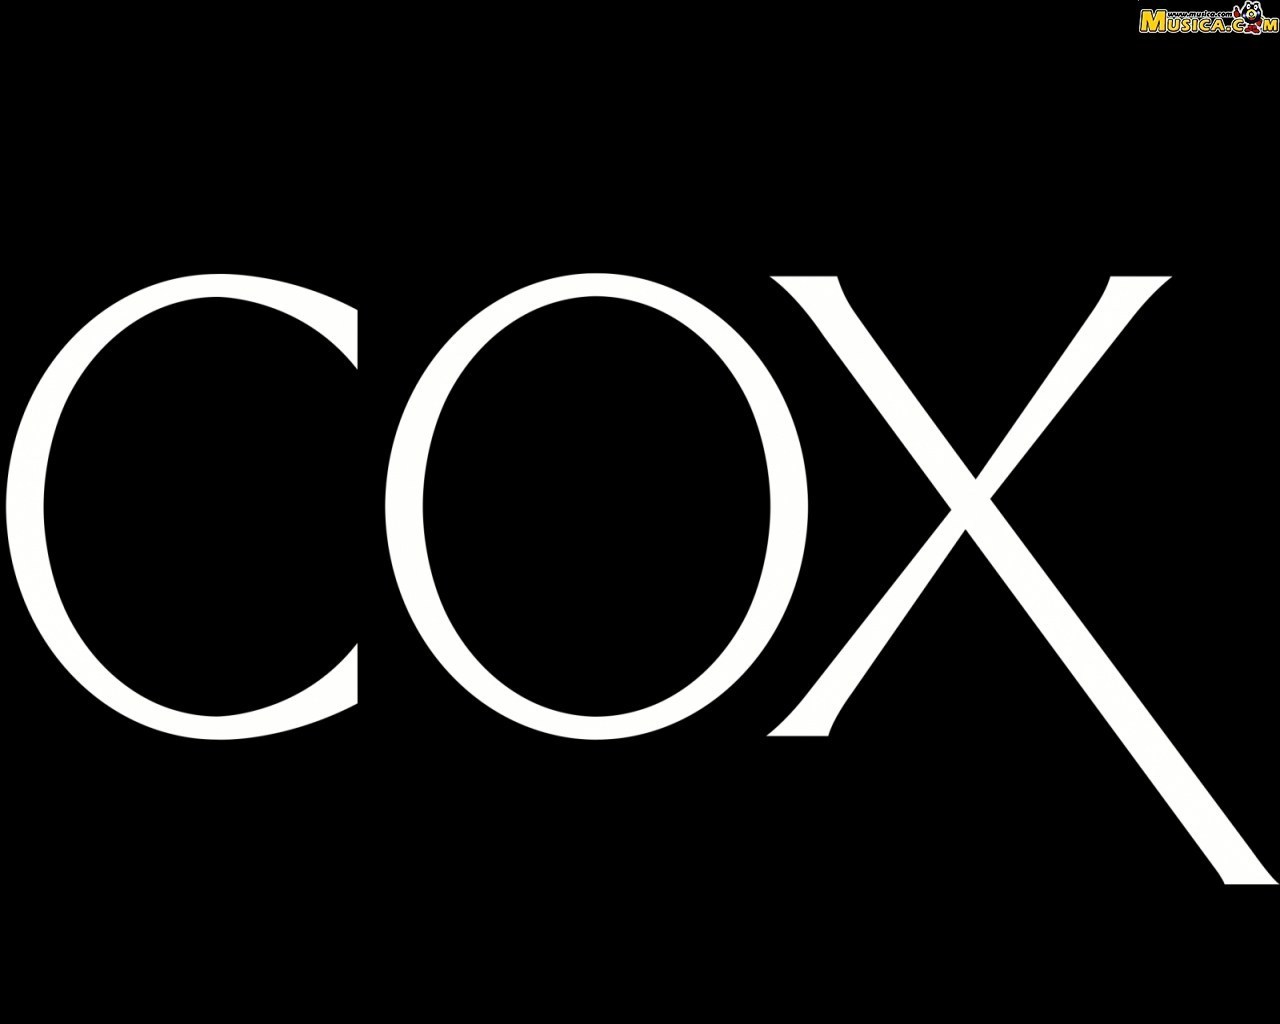 Fondo de pantalla de Cox